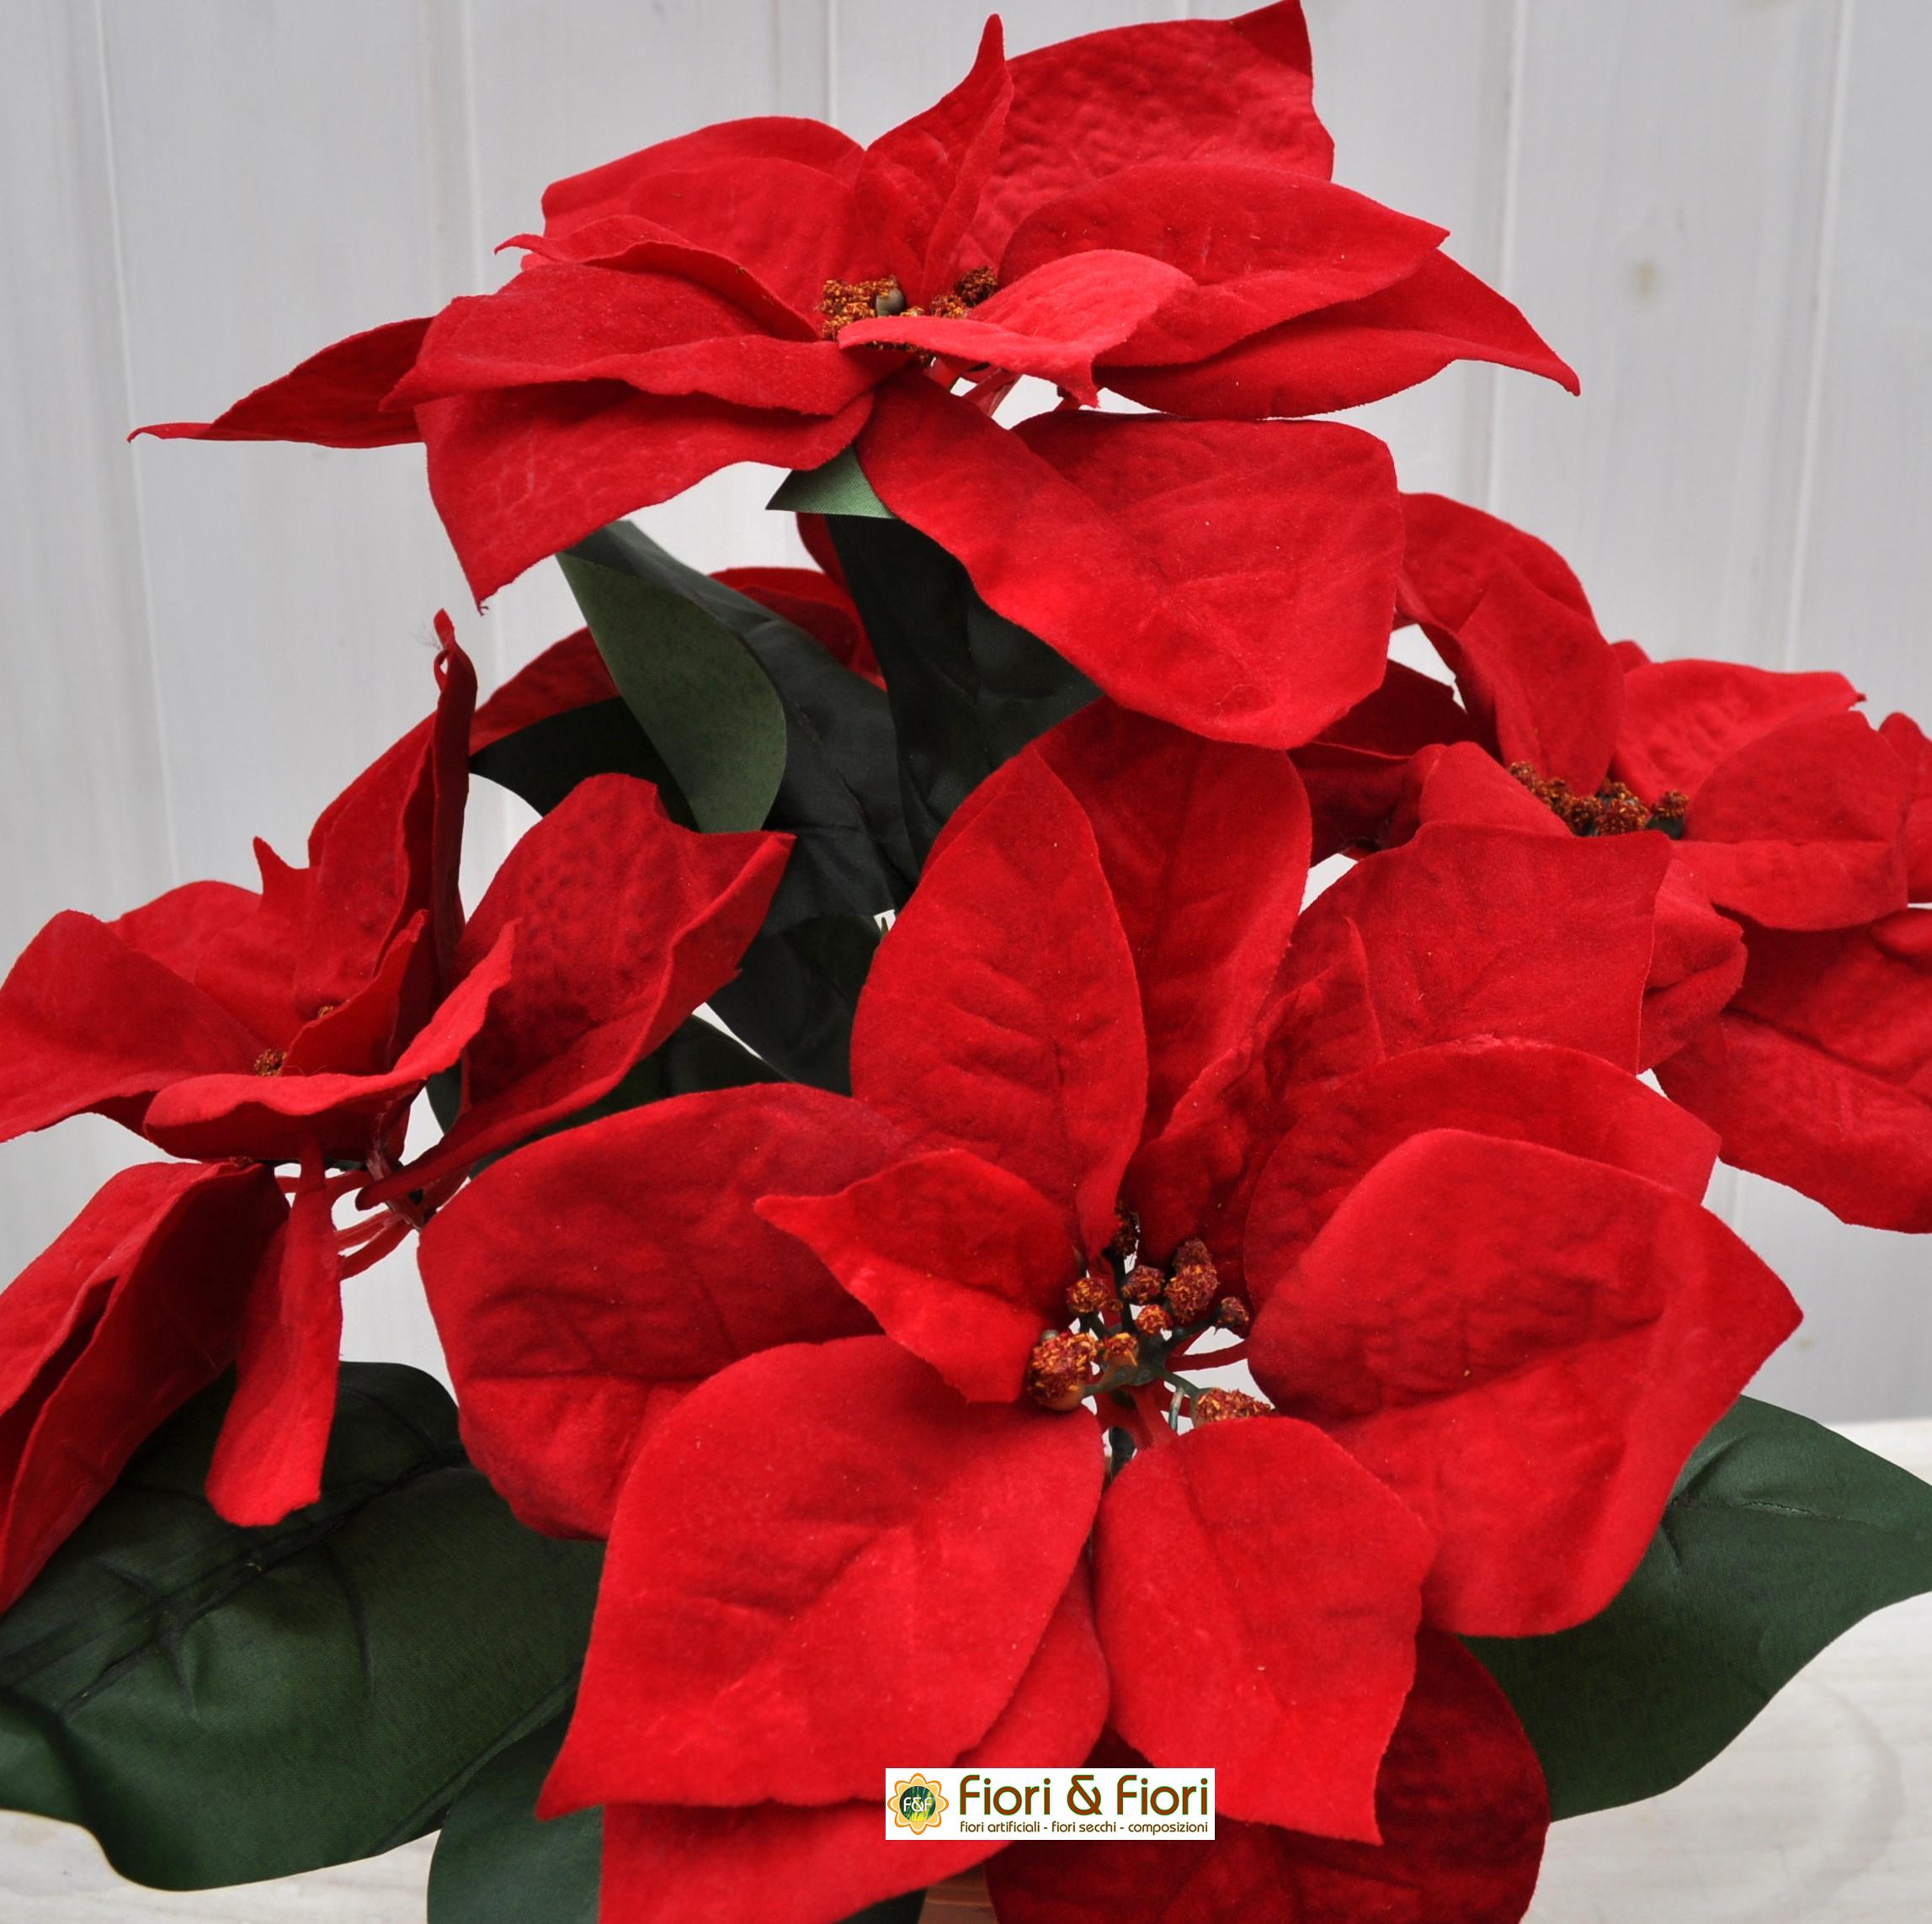 Immagini Di Fiori Natale.Stella Di Natale Artificiale Rossa Grande In Vaso Con Fiori In Tessuto